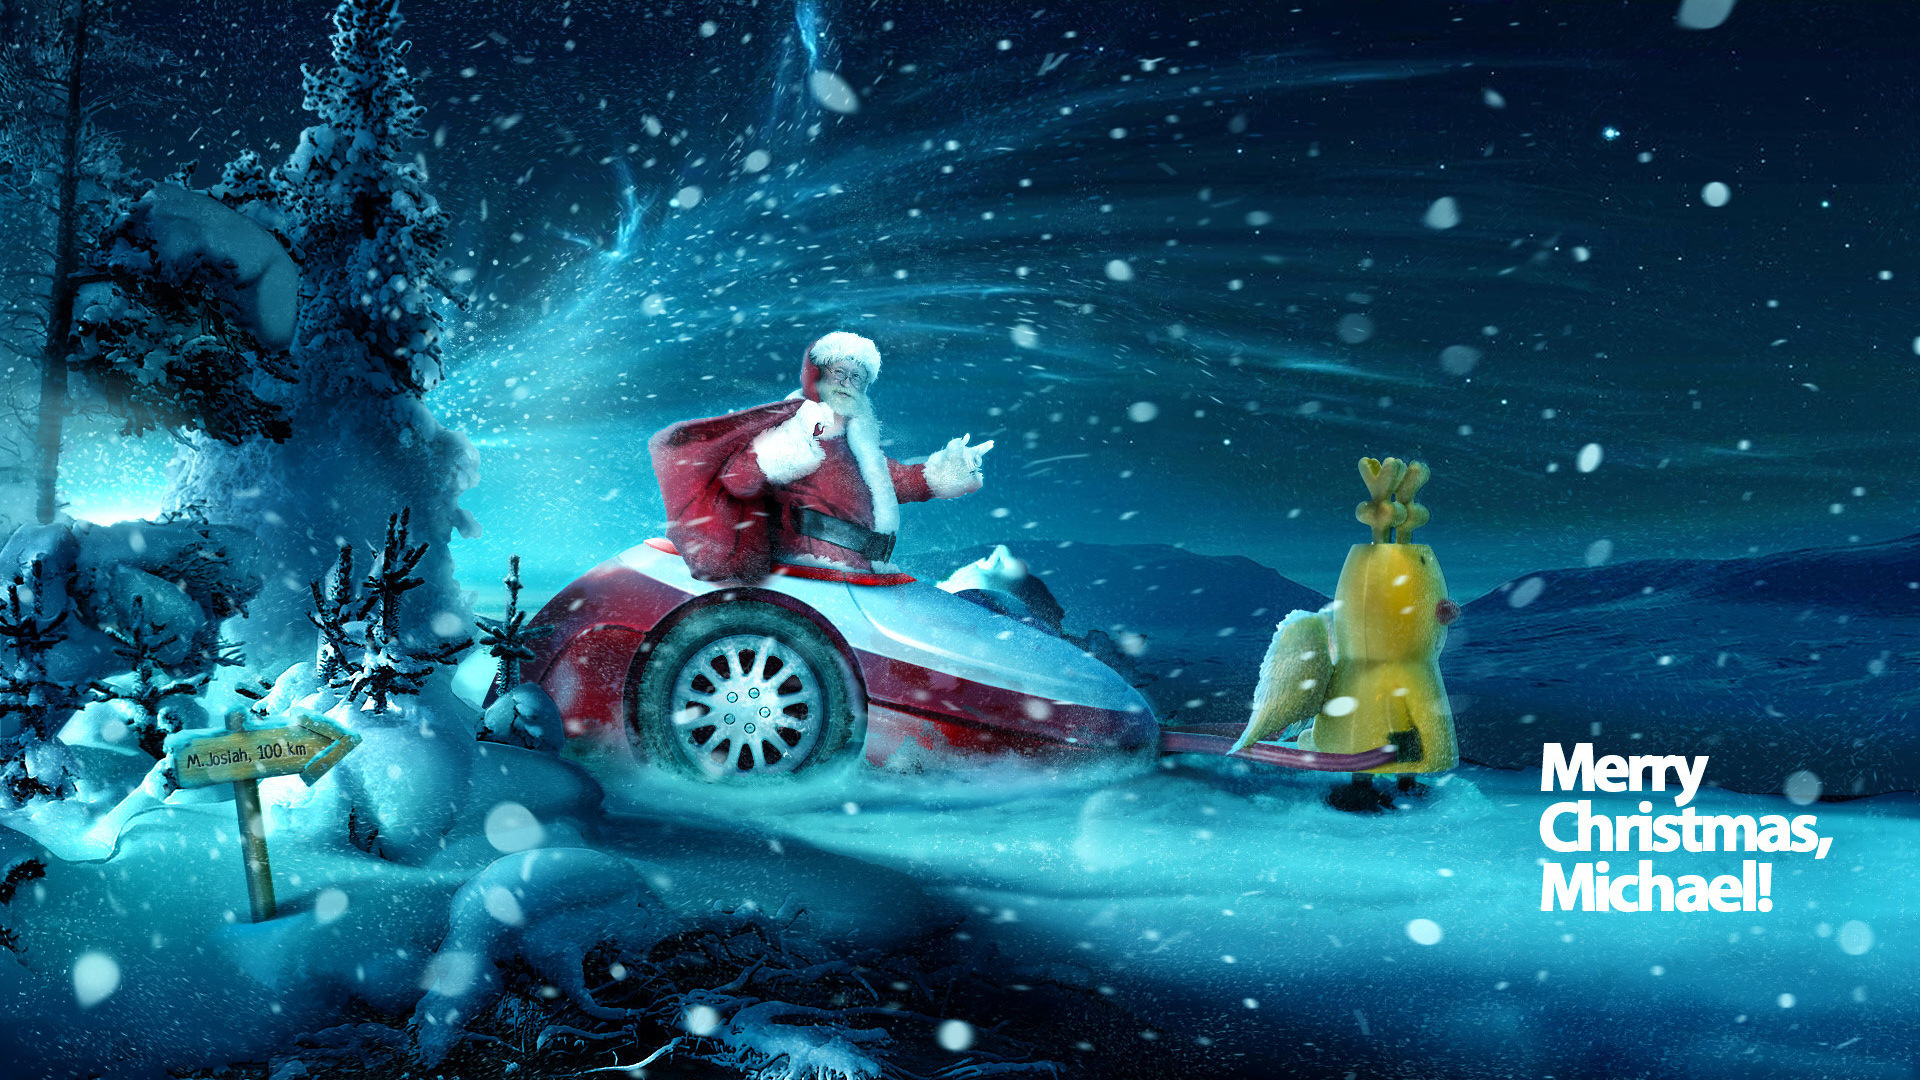 3d обои Дет мороз в прицепе запряженном в желтого оленеподобного ангела. Метель (Merry Christmas, Michael!  M. Joslah 100km)  сюрреализм # 82280